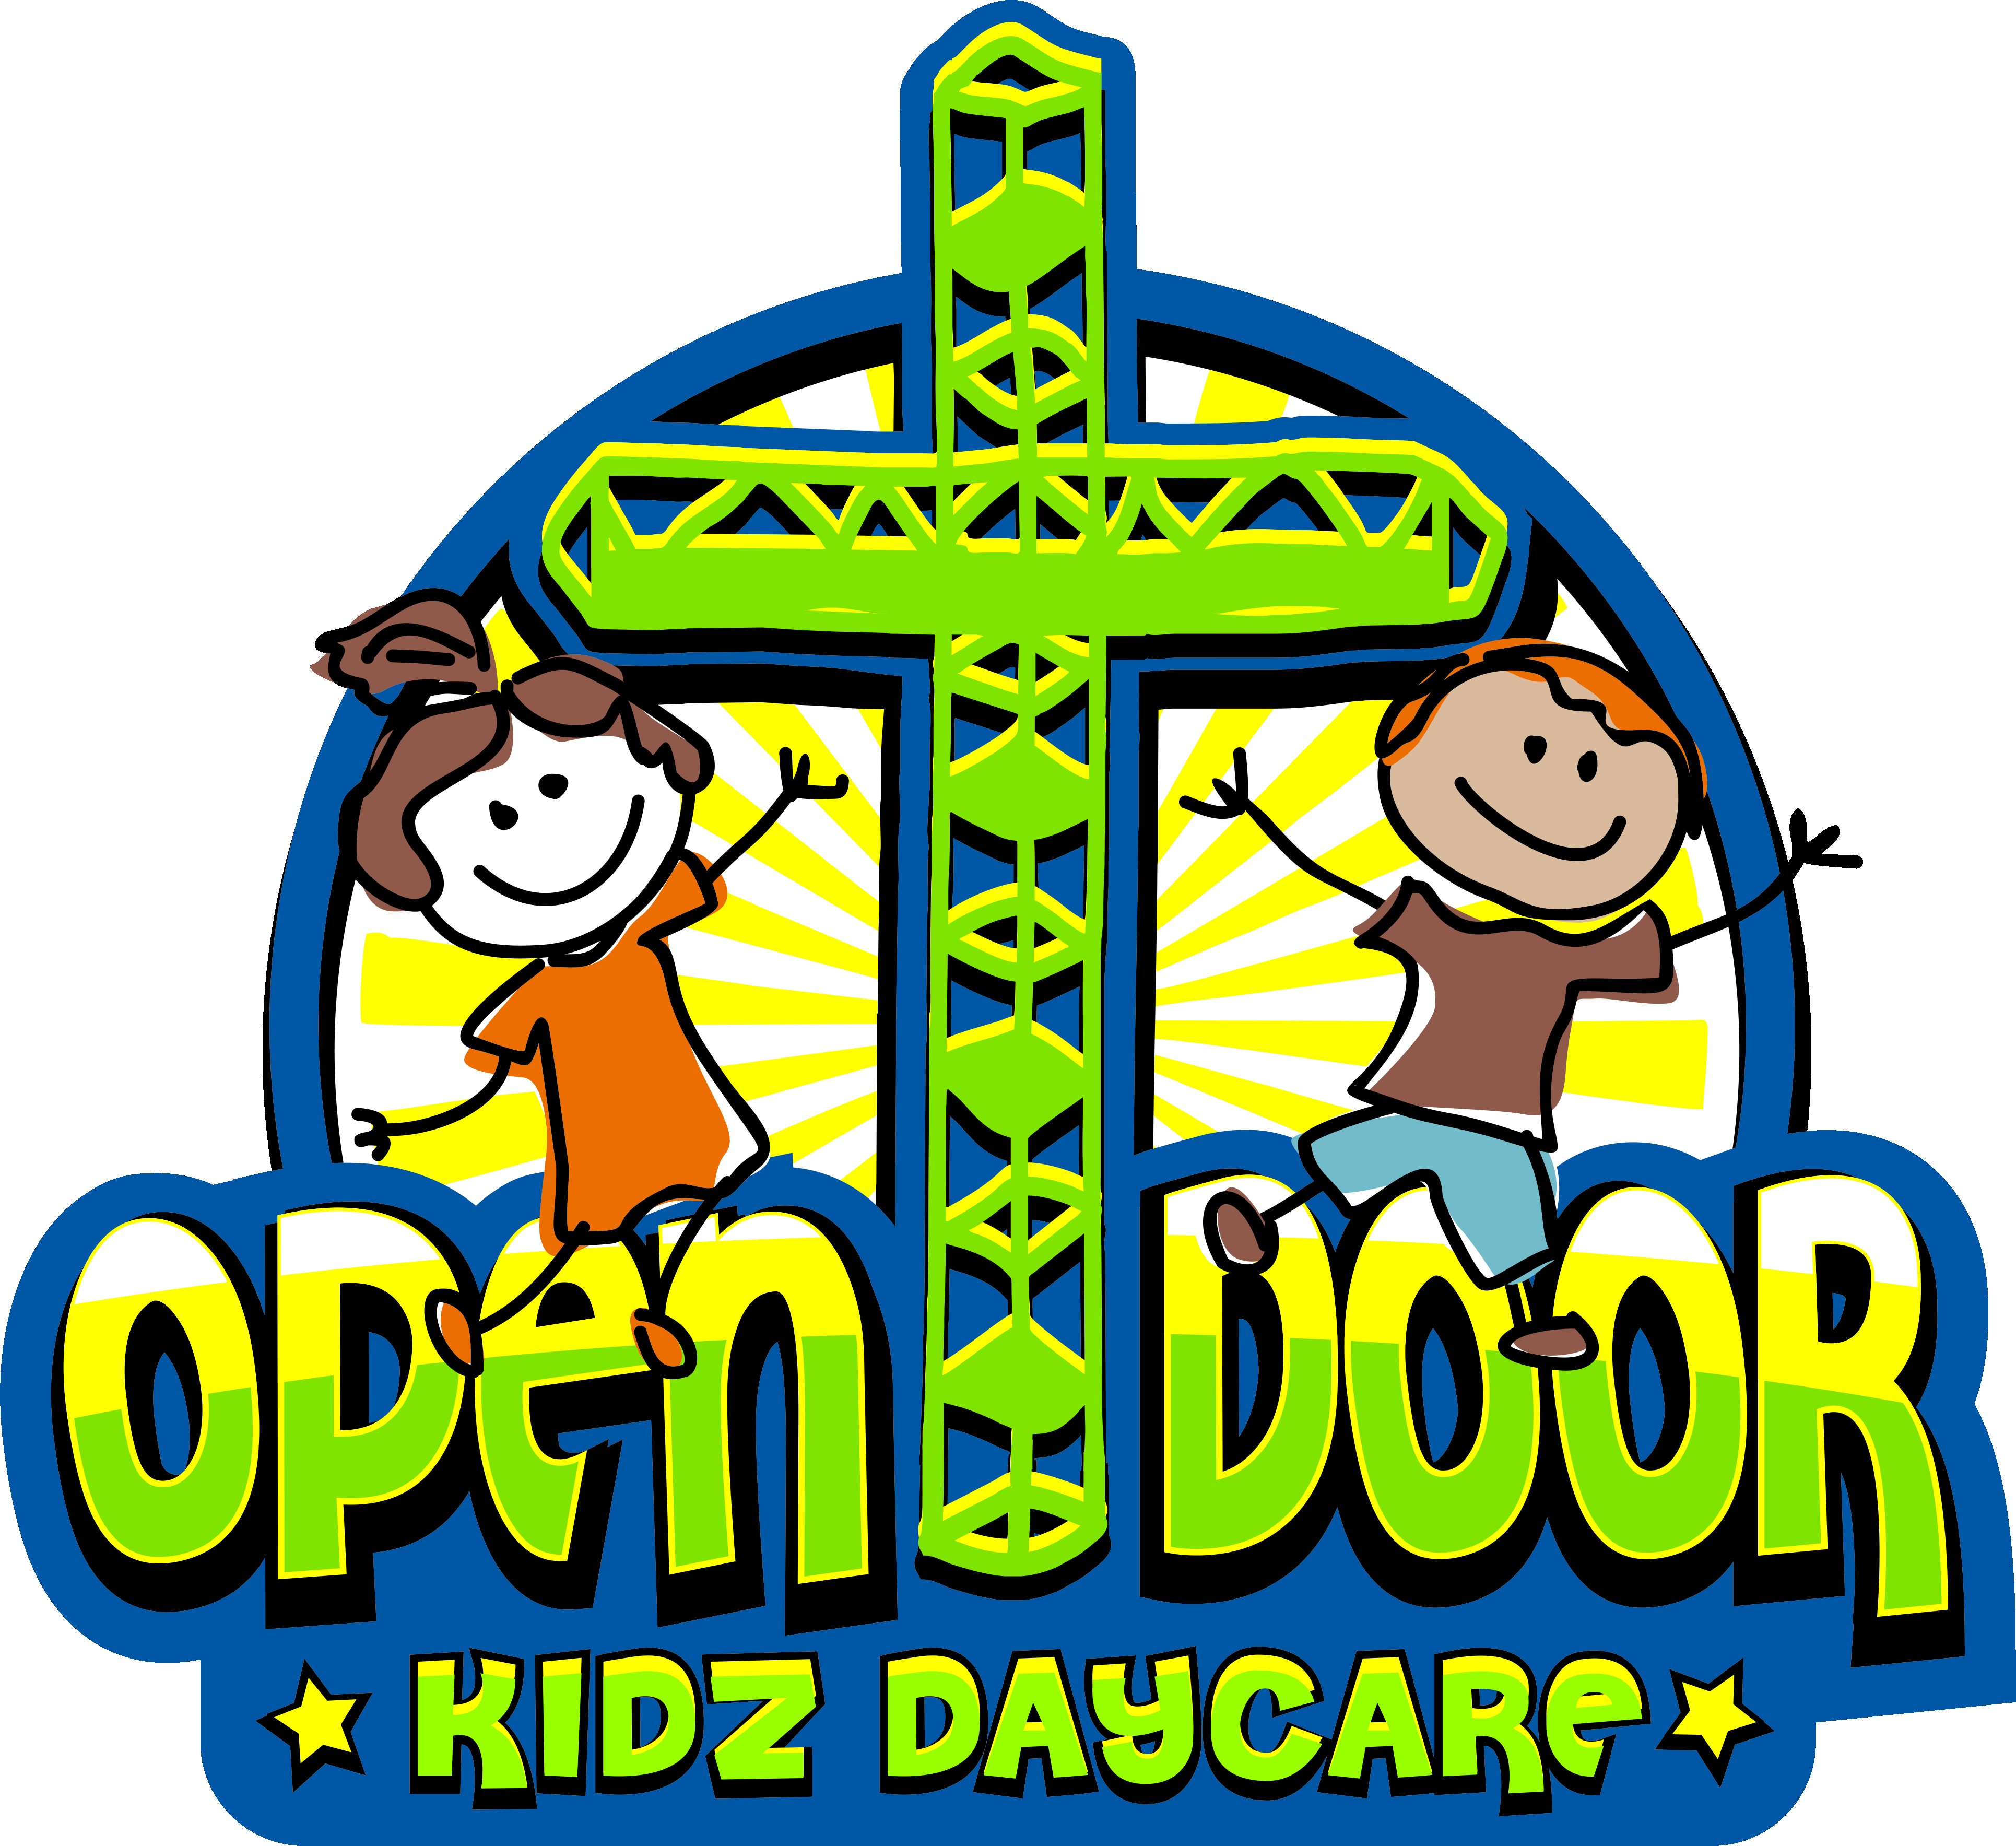 Open Door Baptist Church, Inc.